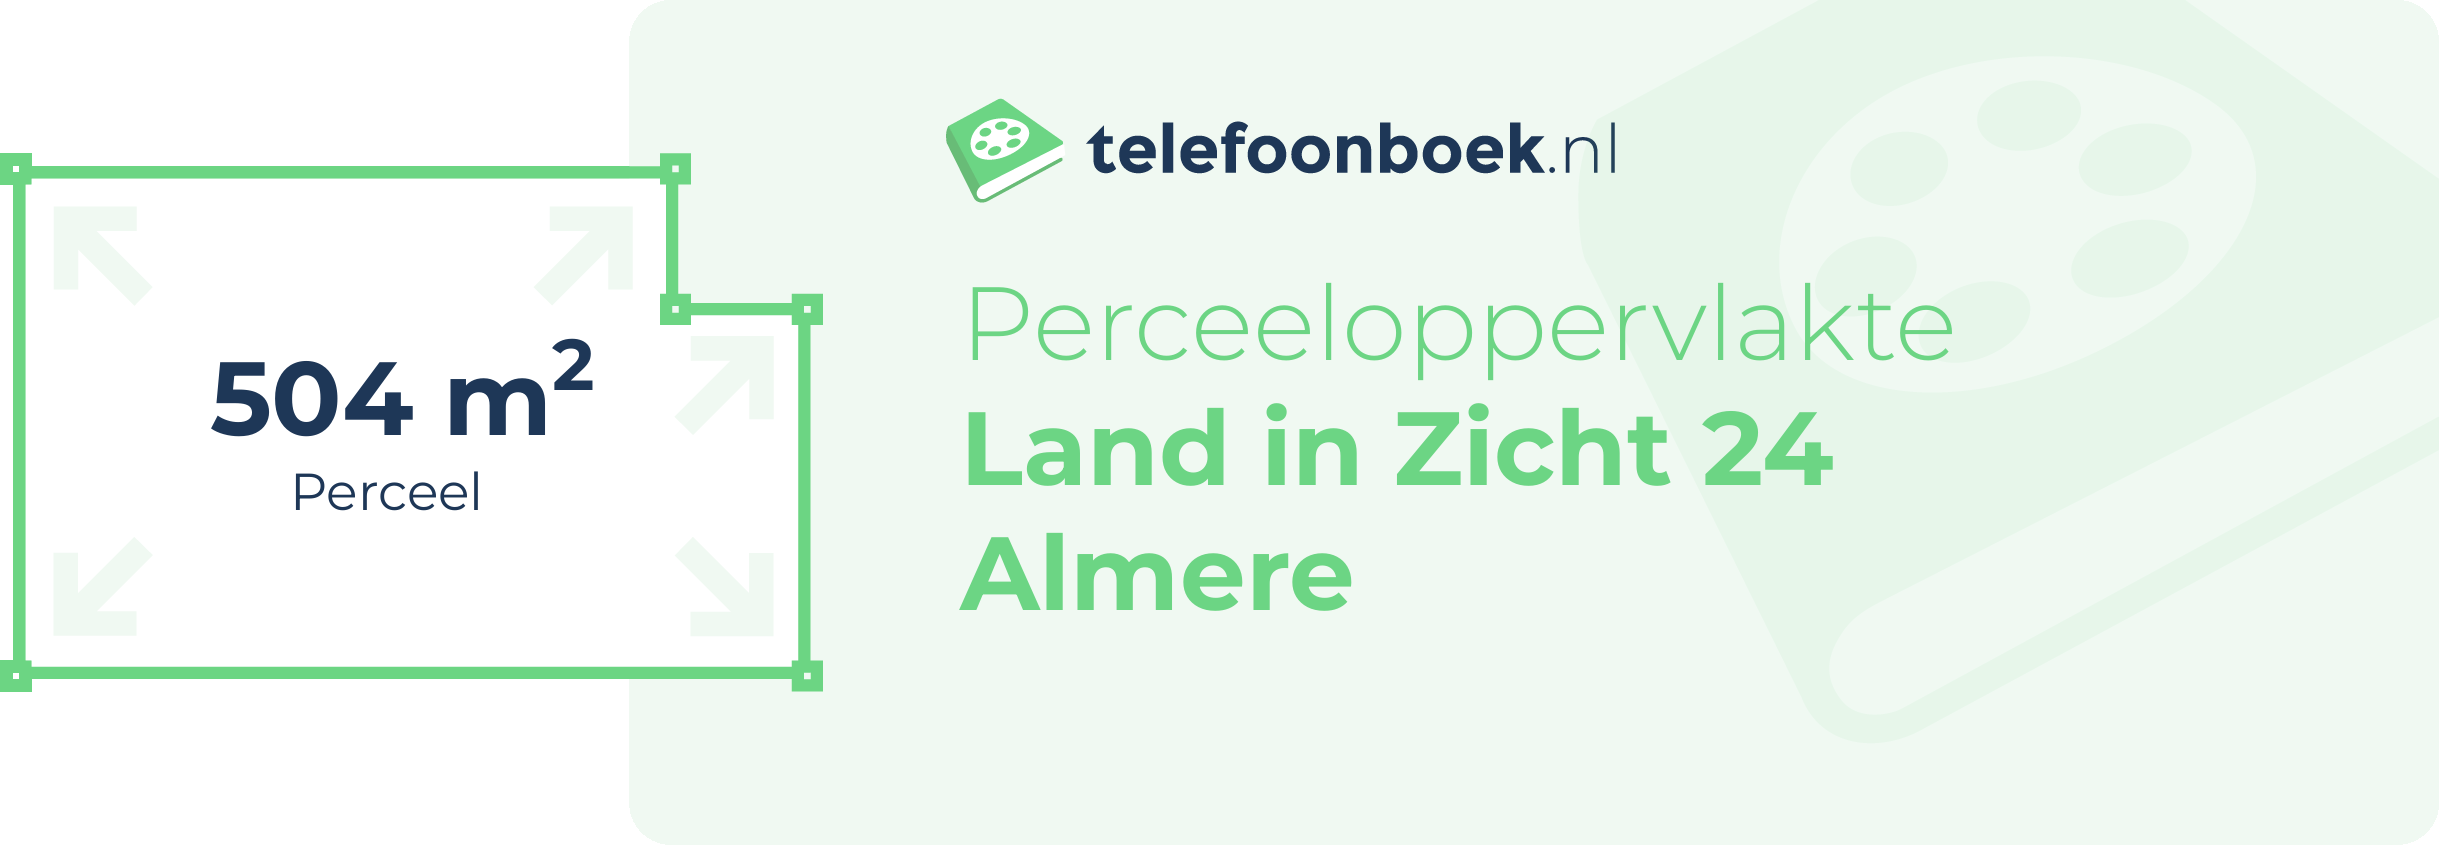 Perceeloppervlakte Land In Zicht 24 Almere